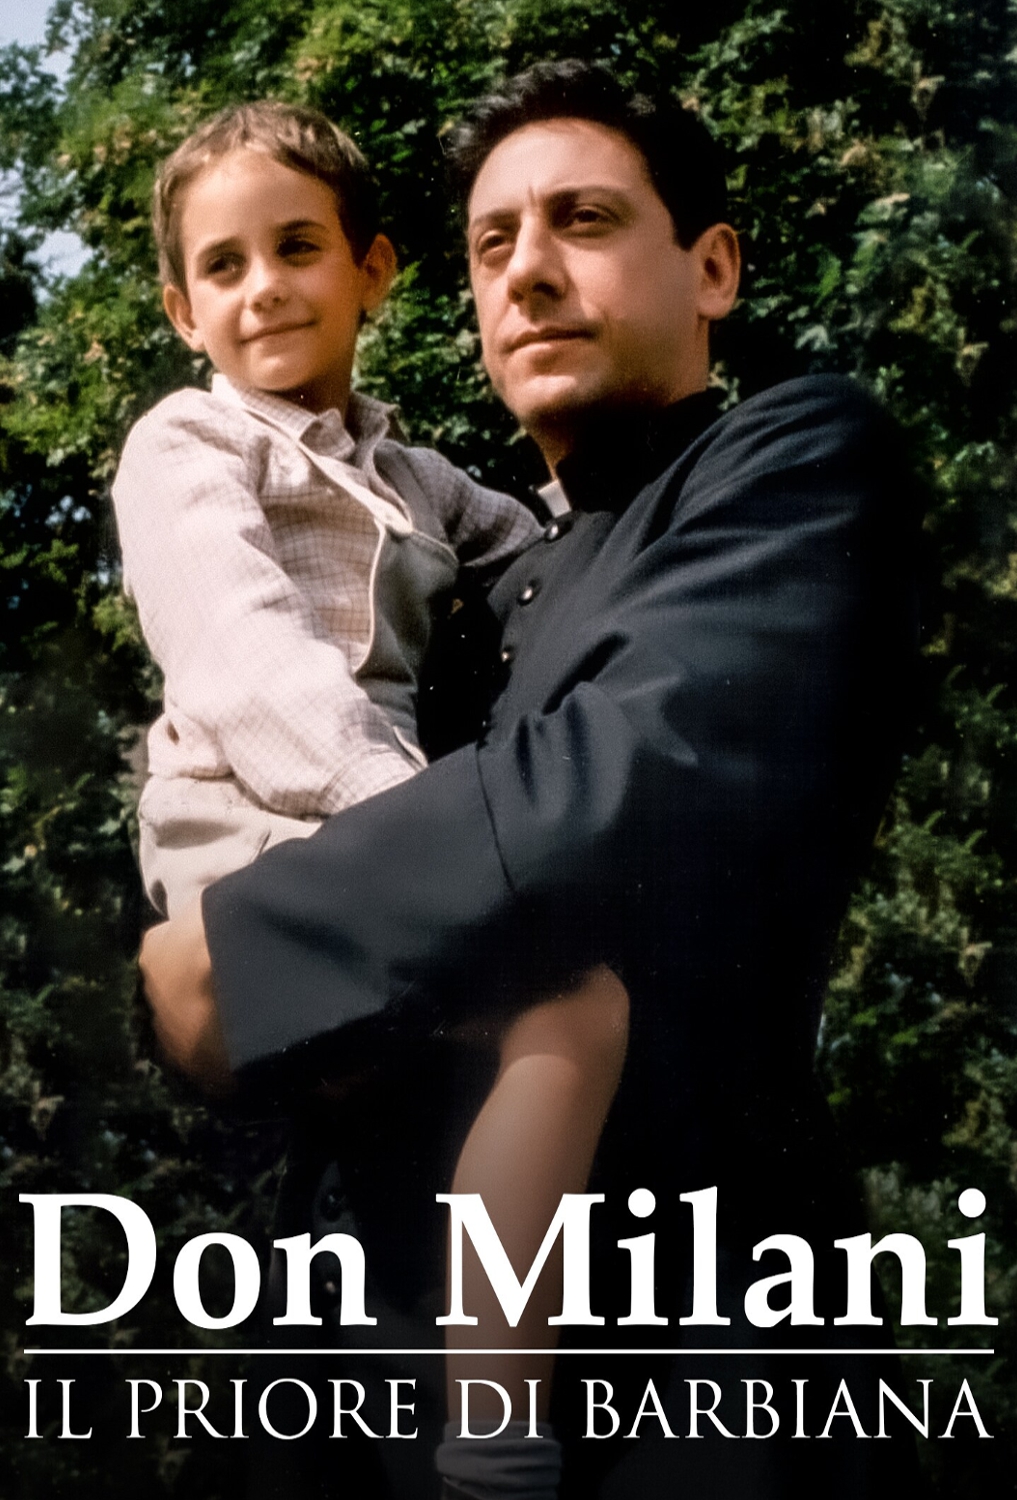 Don Milani – Il priore di Barbiana